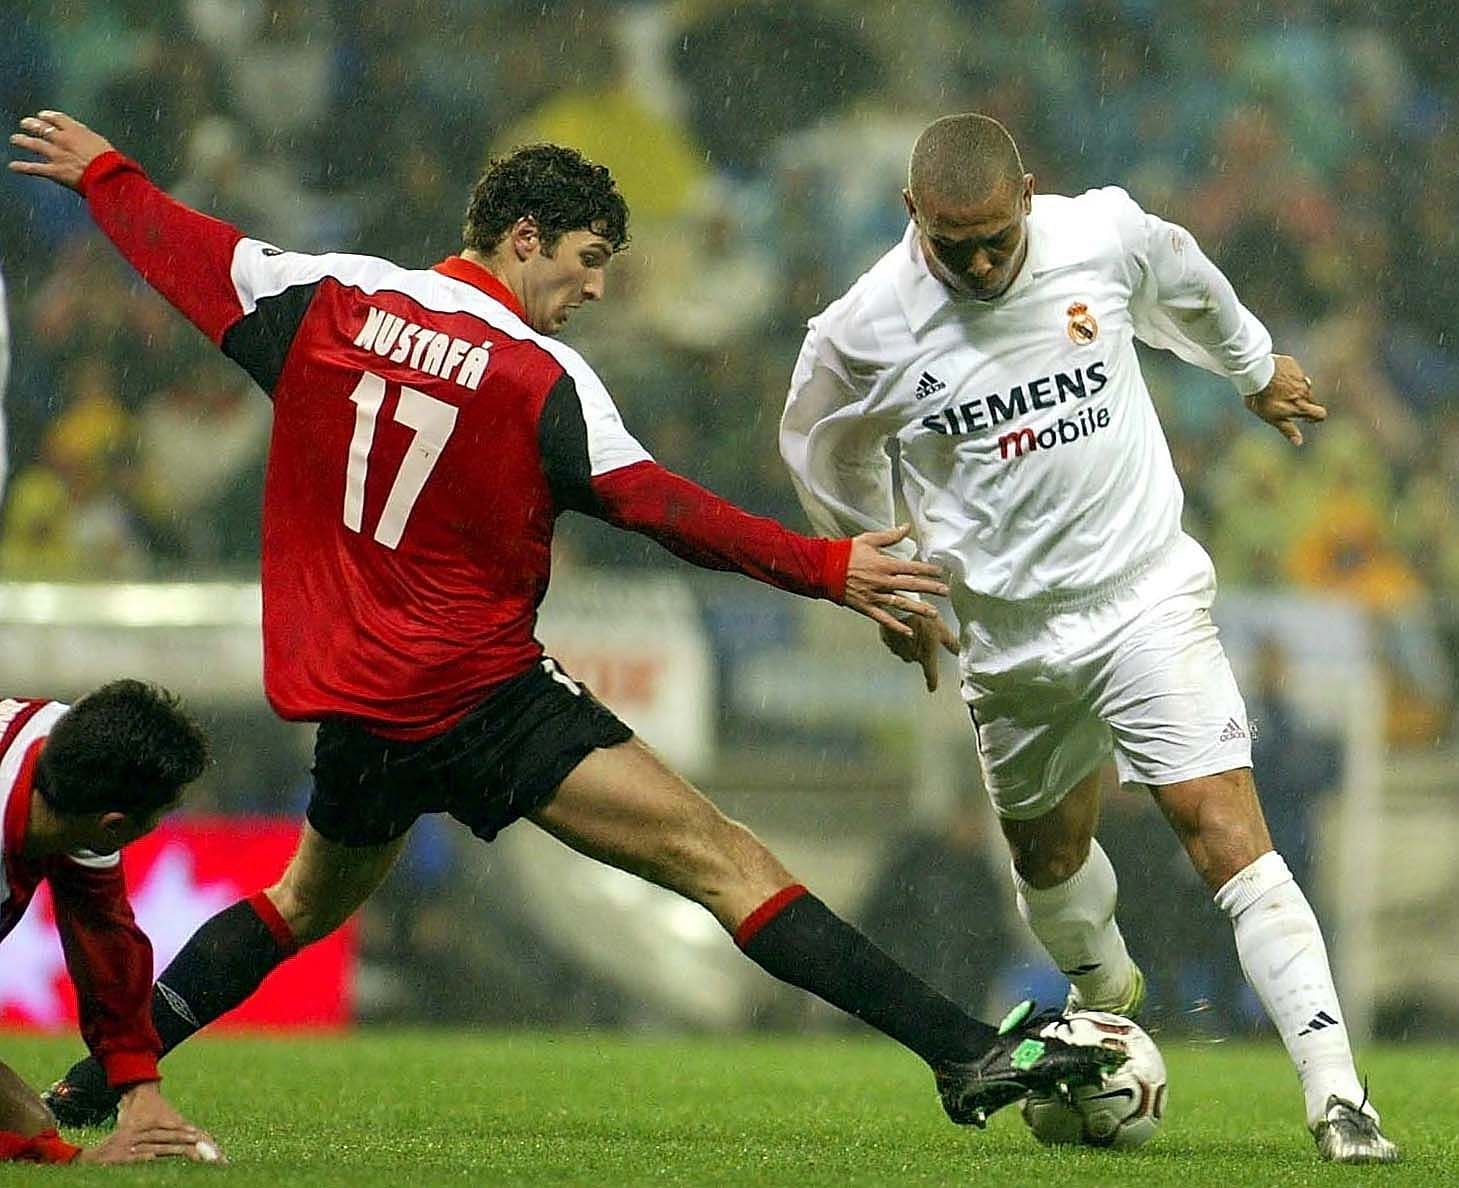 Ronaldo of Madrid and Mustafa of Valladolid